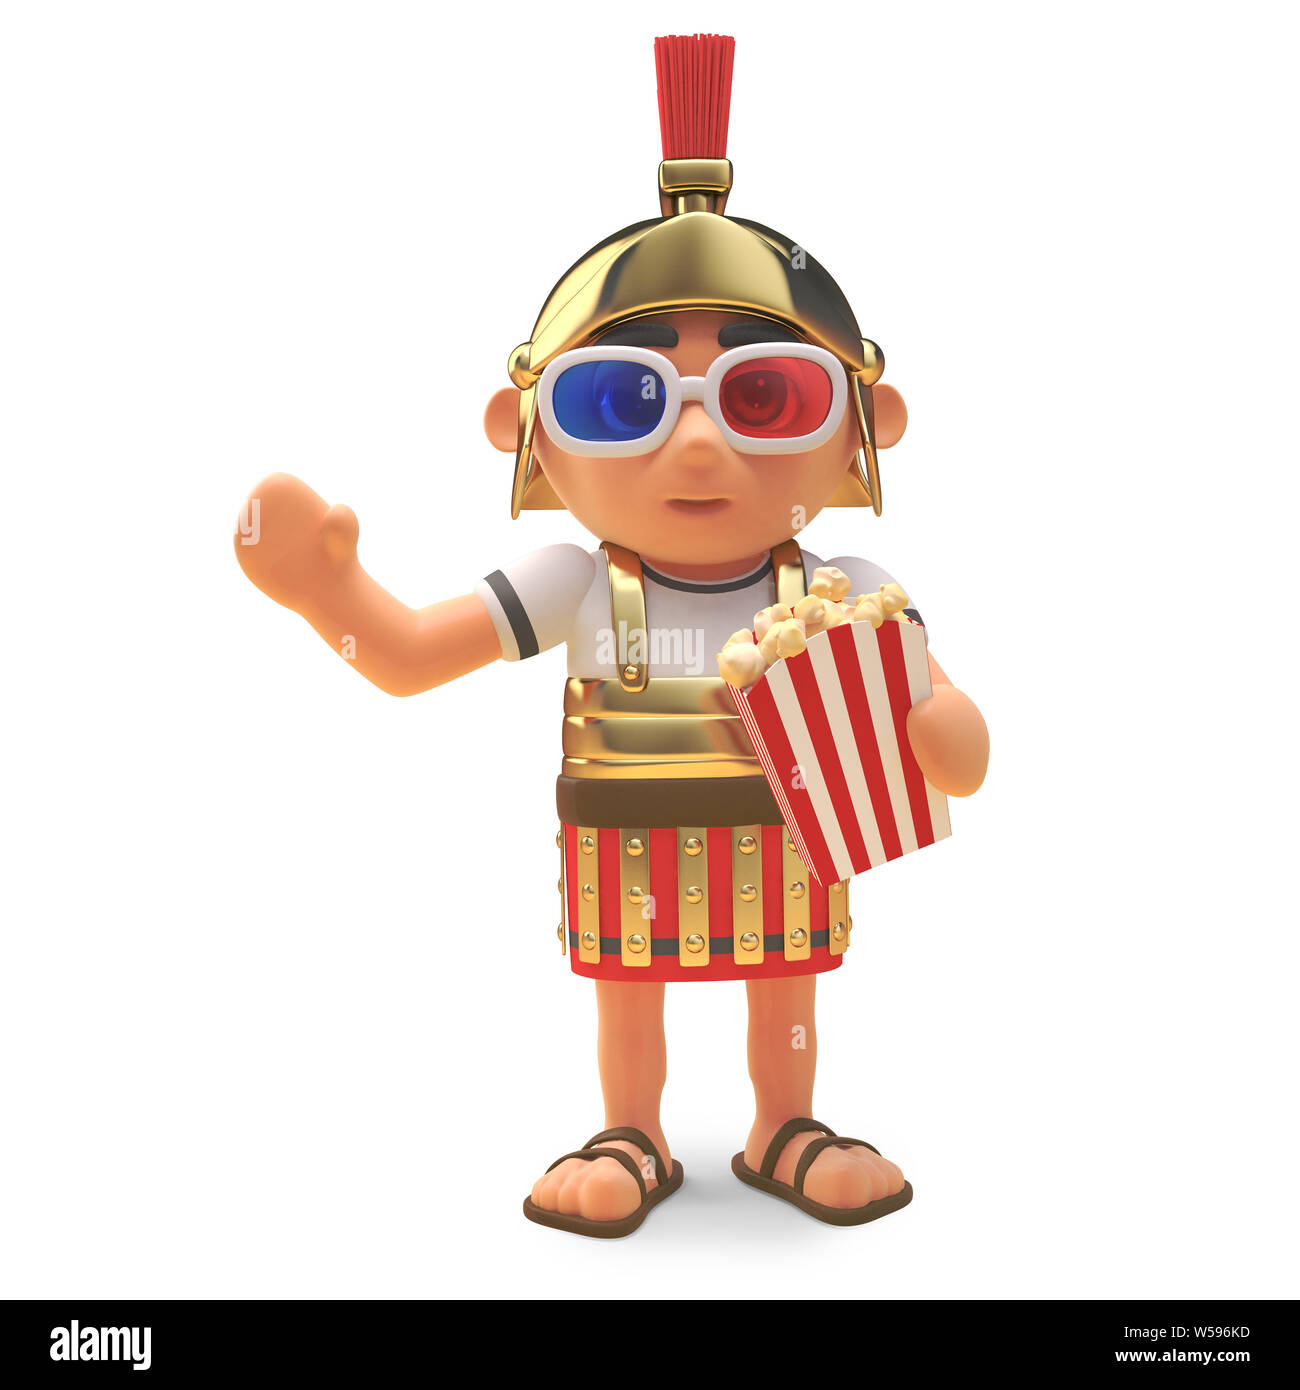 Edle römische Hauptmann Soldat an Cinema 3D-Brille tragen Essen Popcorn, 3d-Grafik rendern Stockfoto